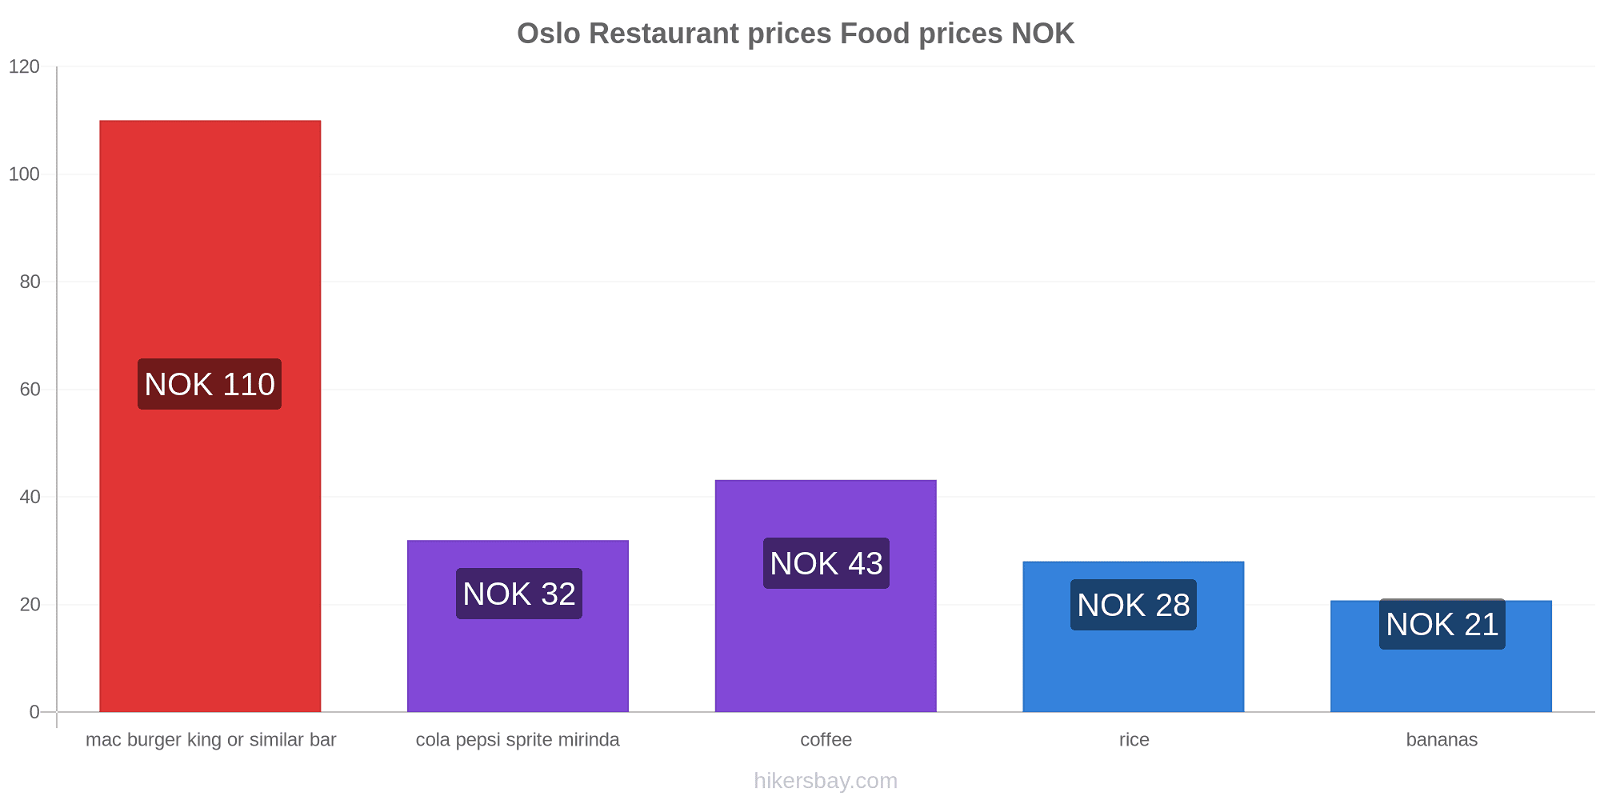 Oslo price changes hikersbay.com